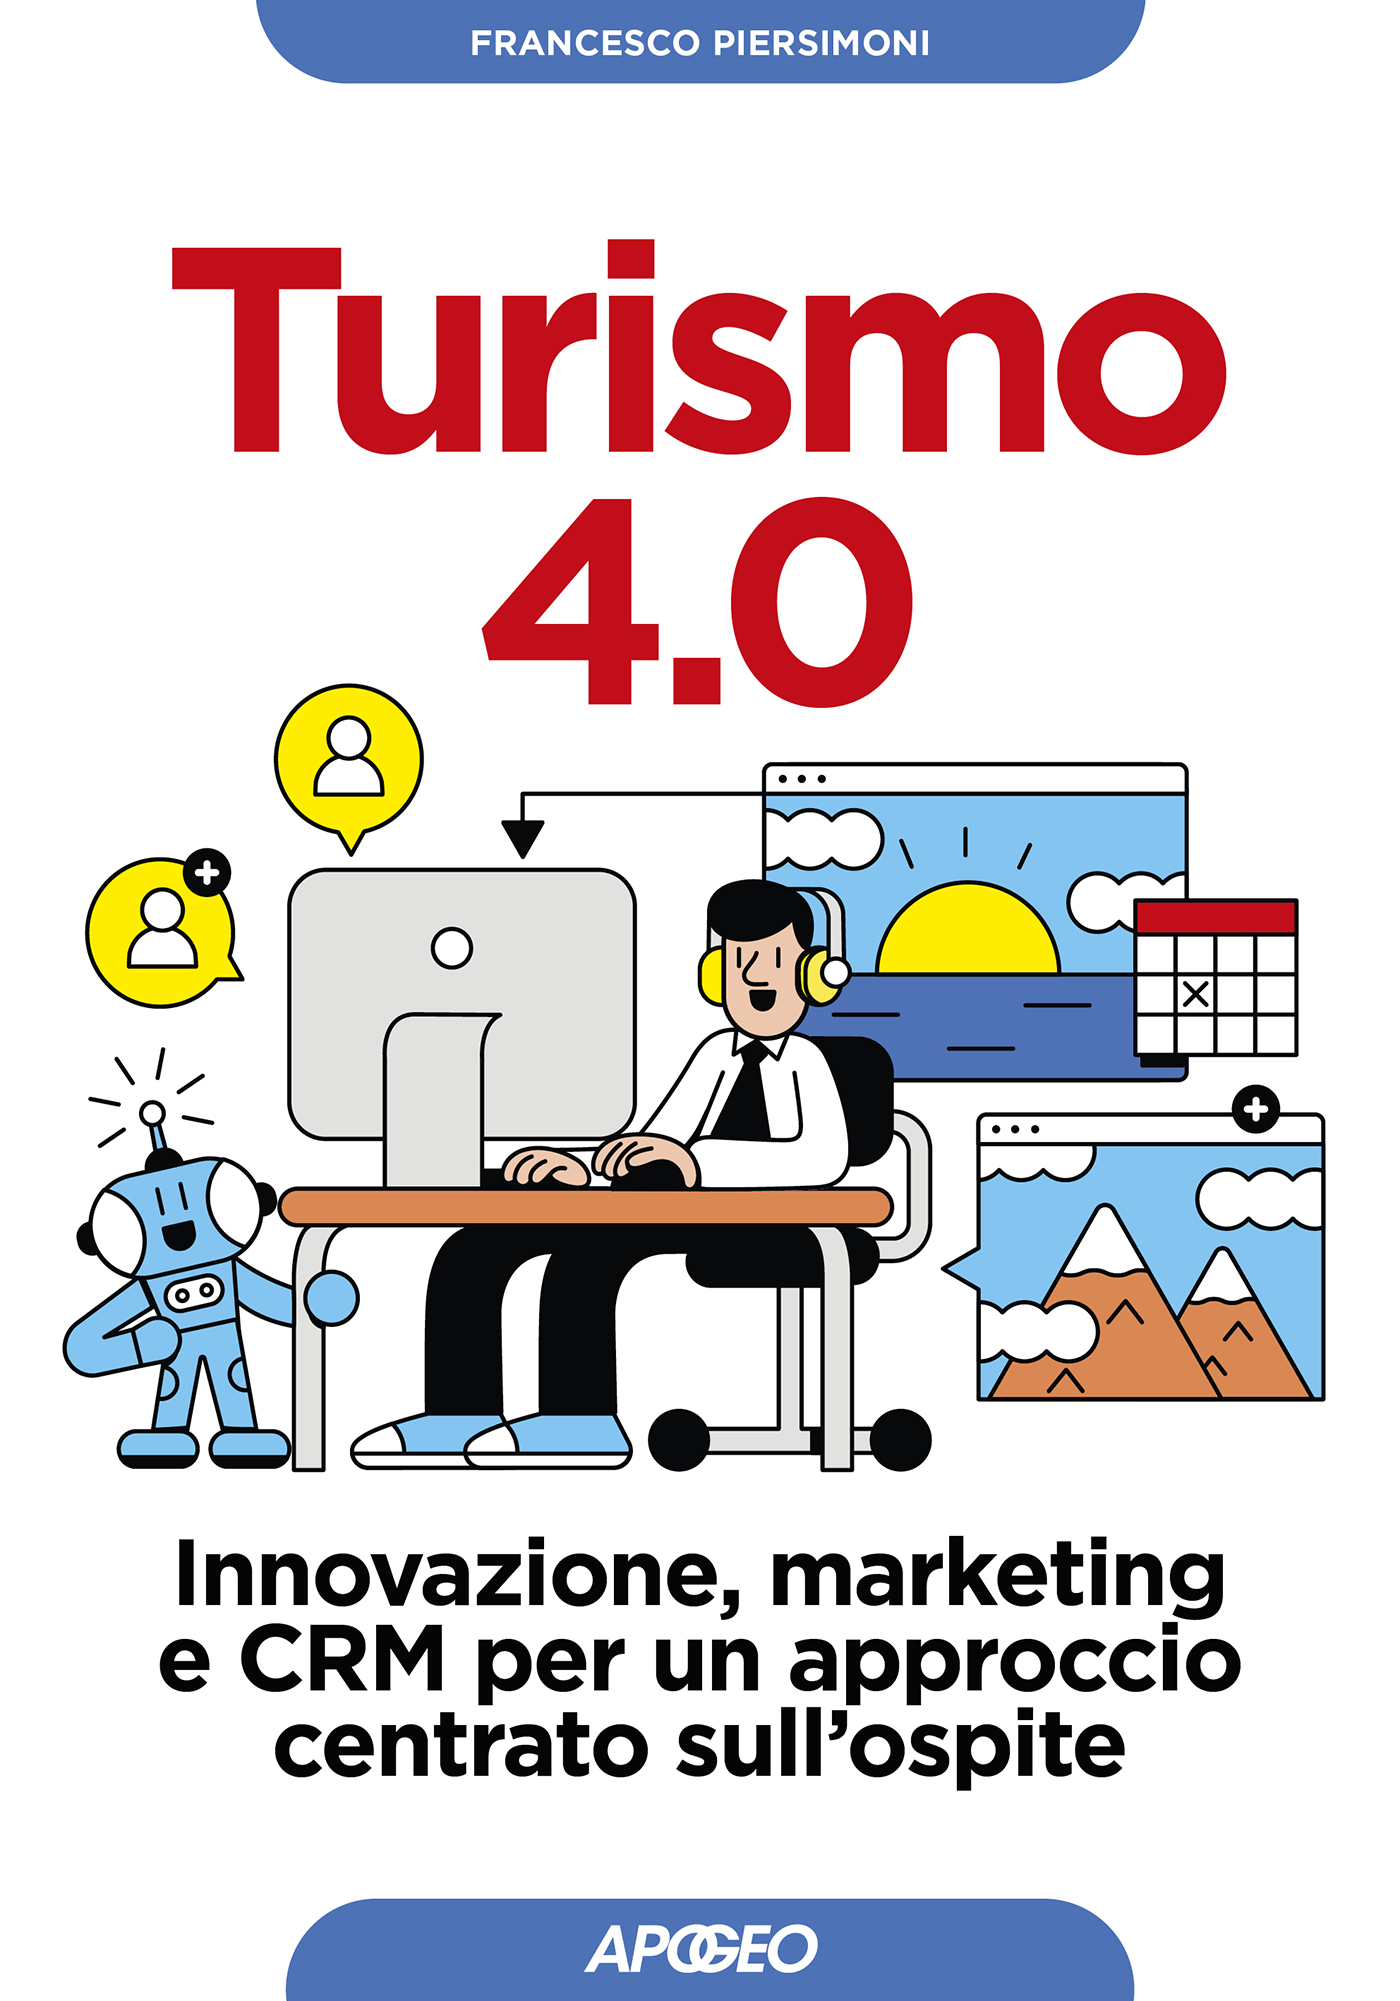 Turismo 4.0 - Innovazione, marketing e CRM per un approccio centrato sull'ospite, di Francesco Piersimoni